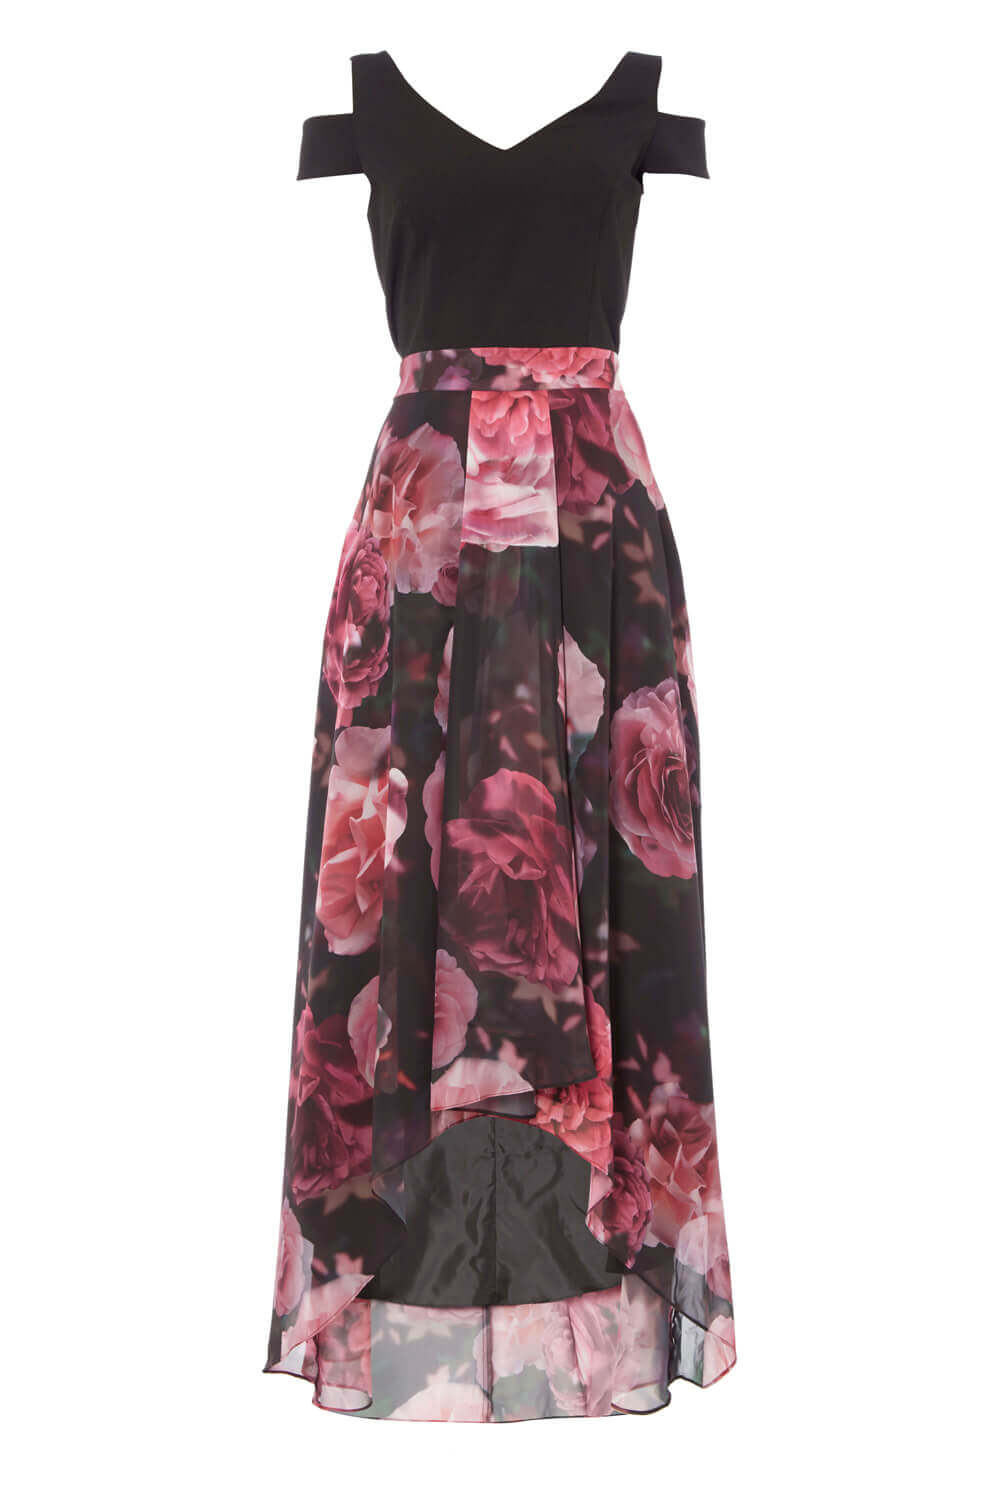 PINK Floral Print Cold Shoulder Maxi Dress, Image 5 of 5